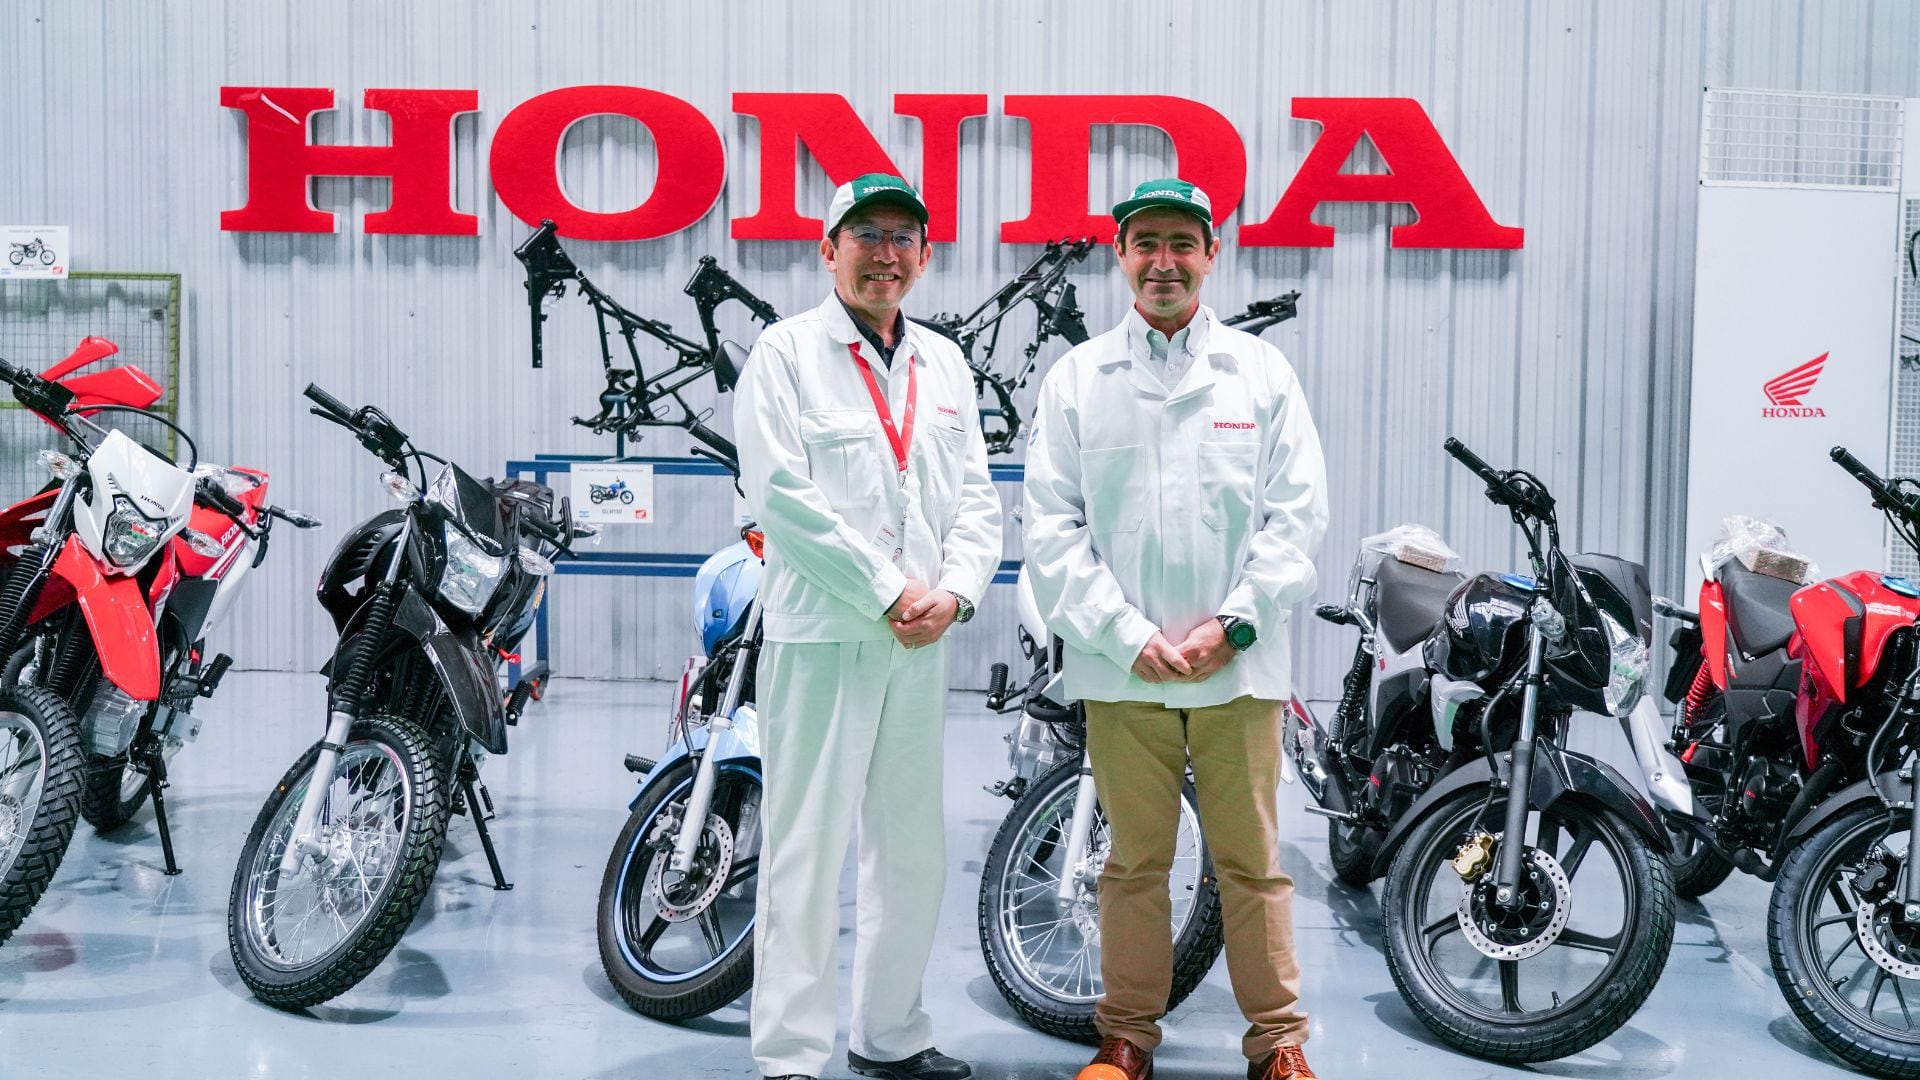 Honda fabrica motos en un proceso de producción con energía 100% neutra en carbono (Honda)